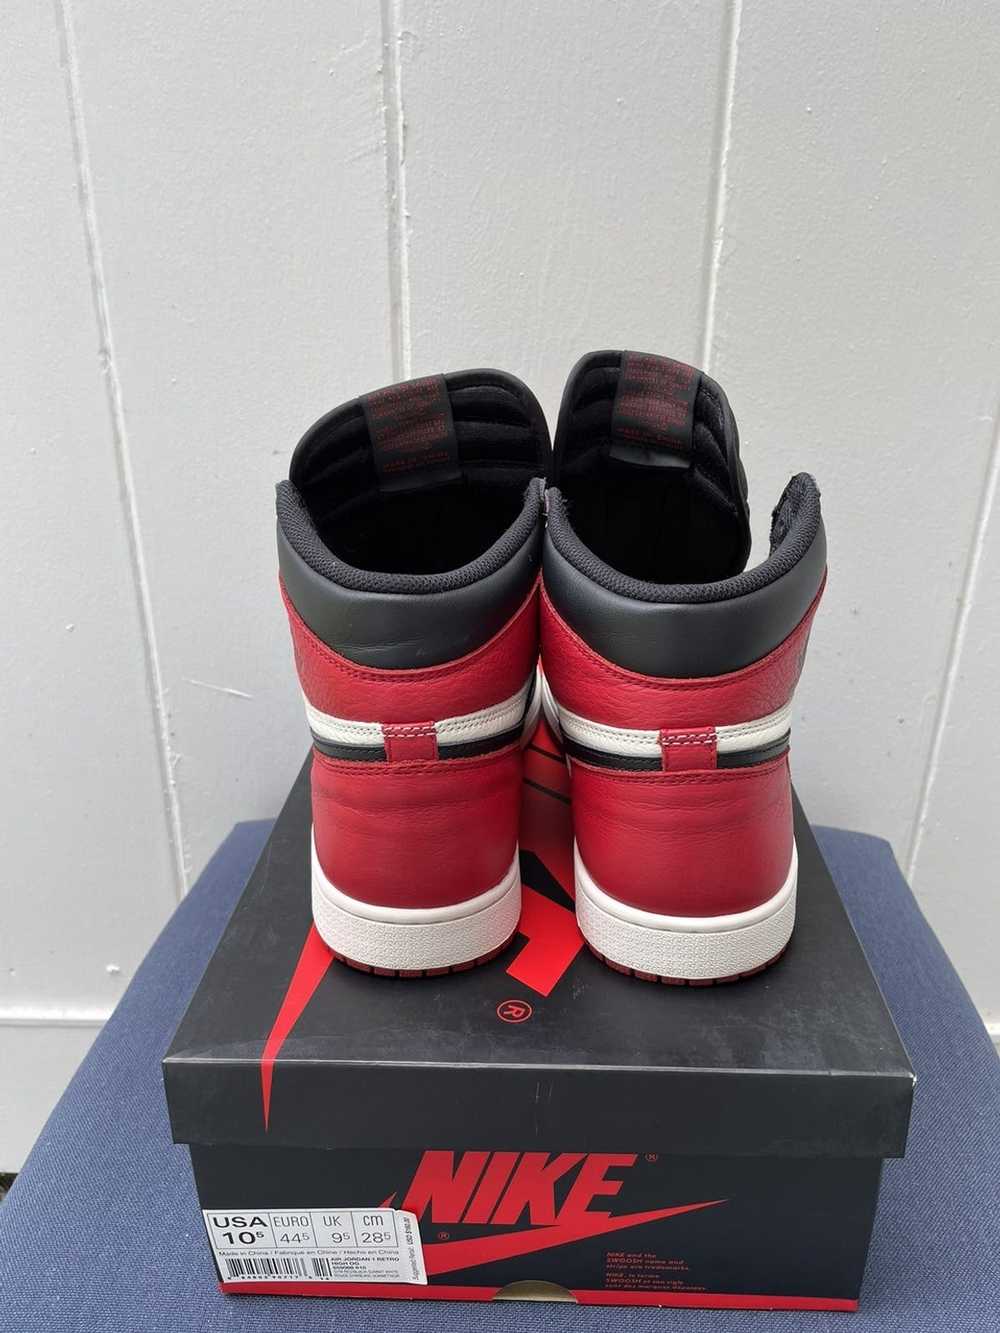 Jordan Brand × Nike Jordan 1 High Bred Toe 2018 - image 6